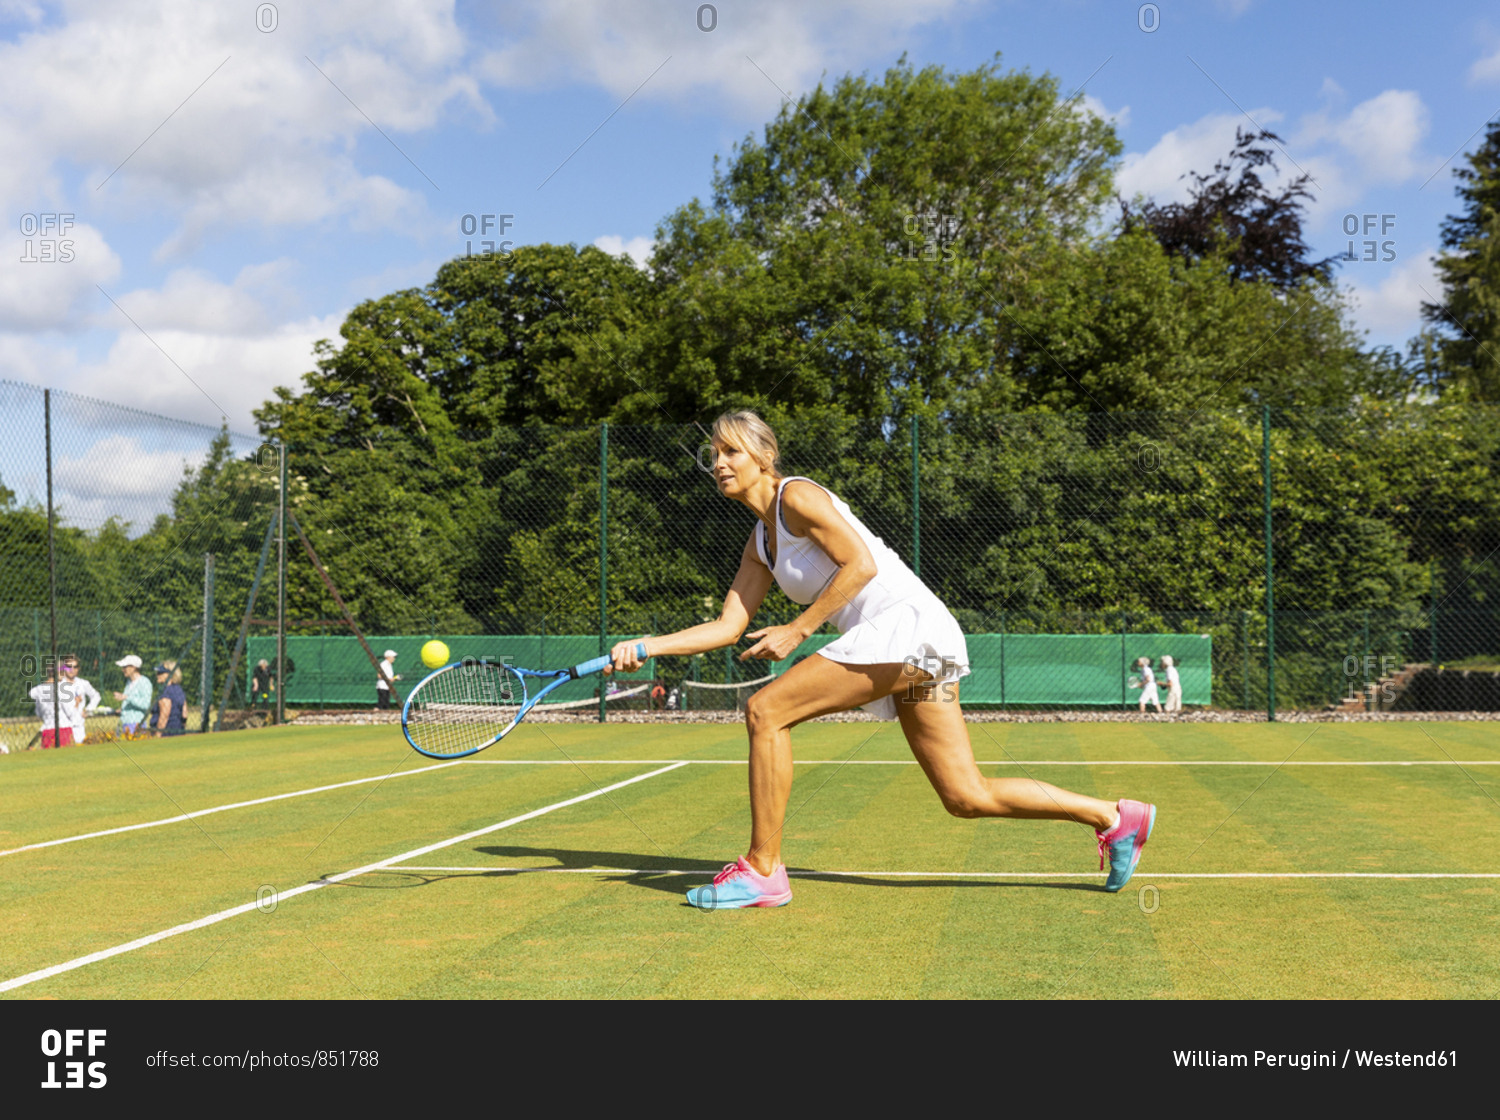 Mature woman during a tennis match on grass court